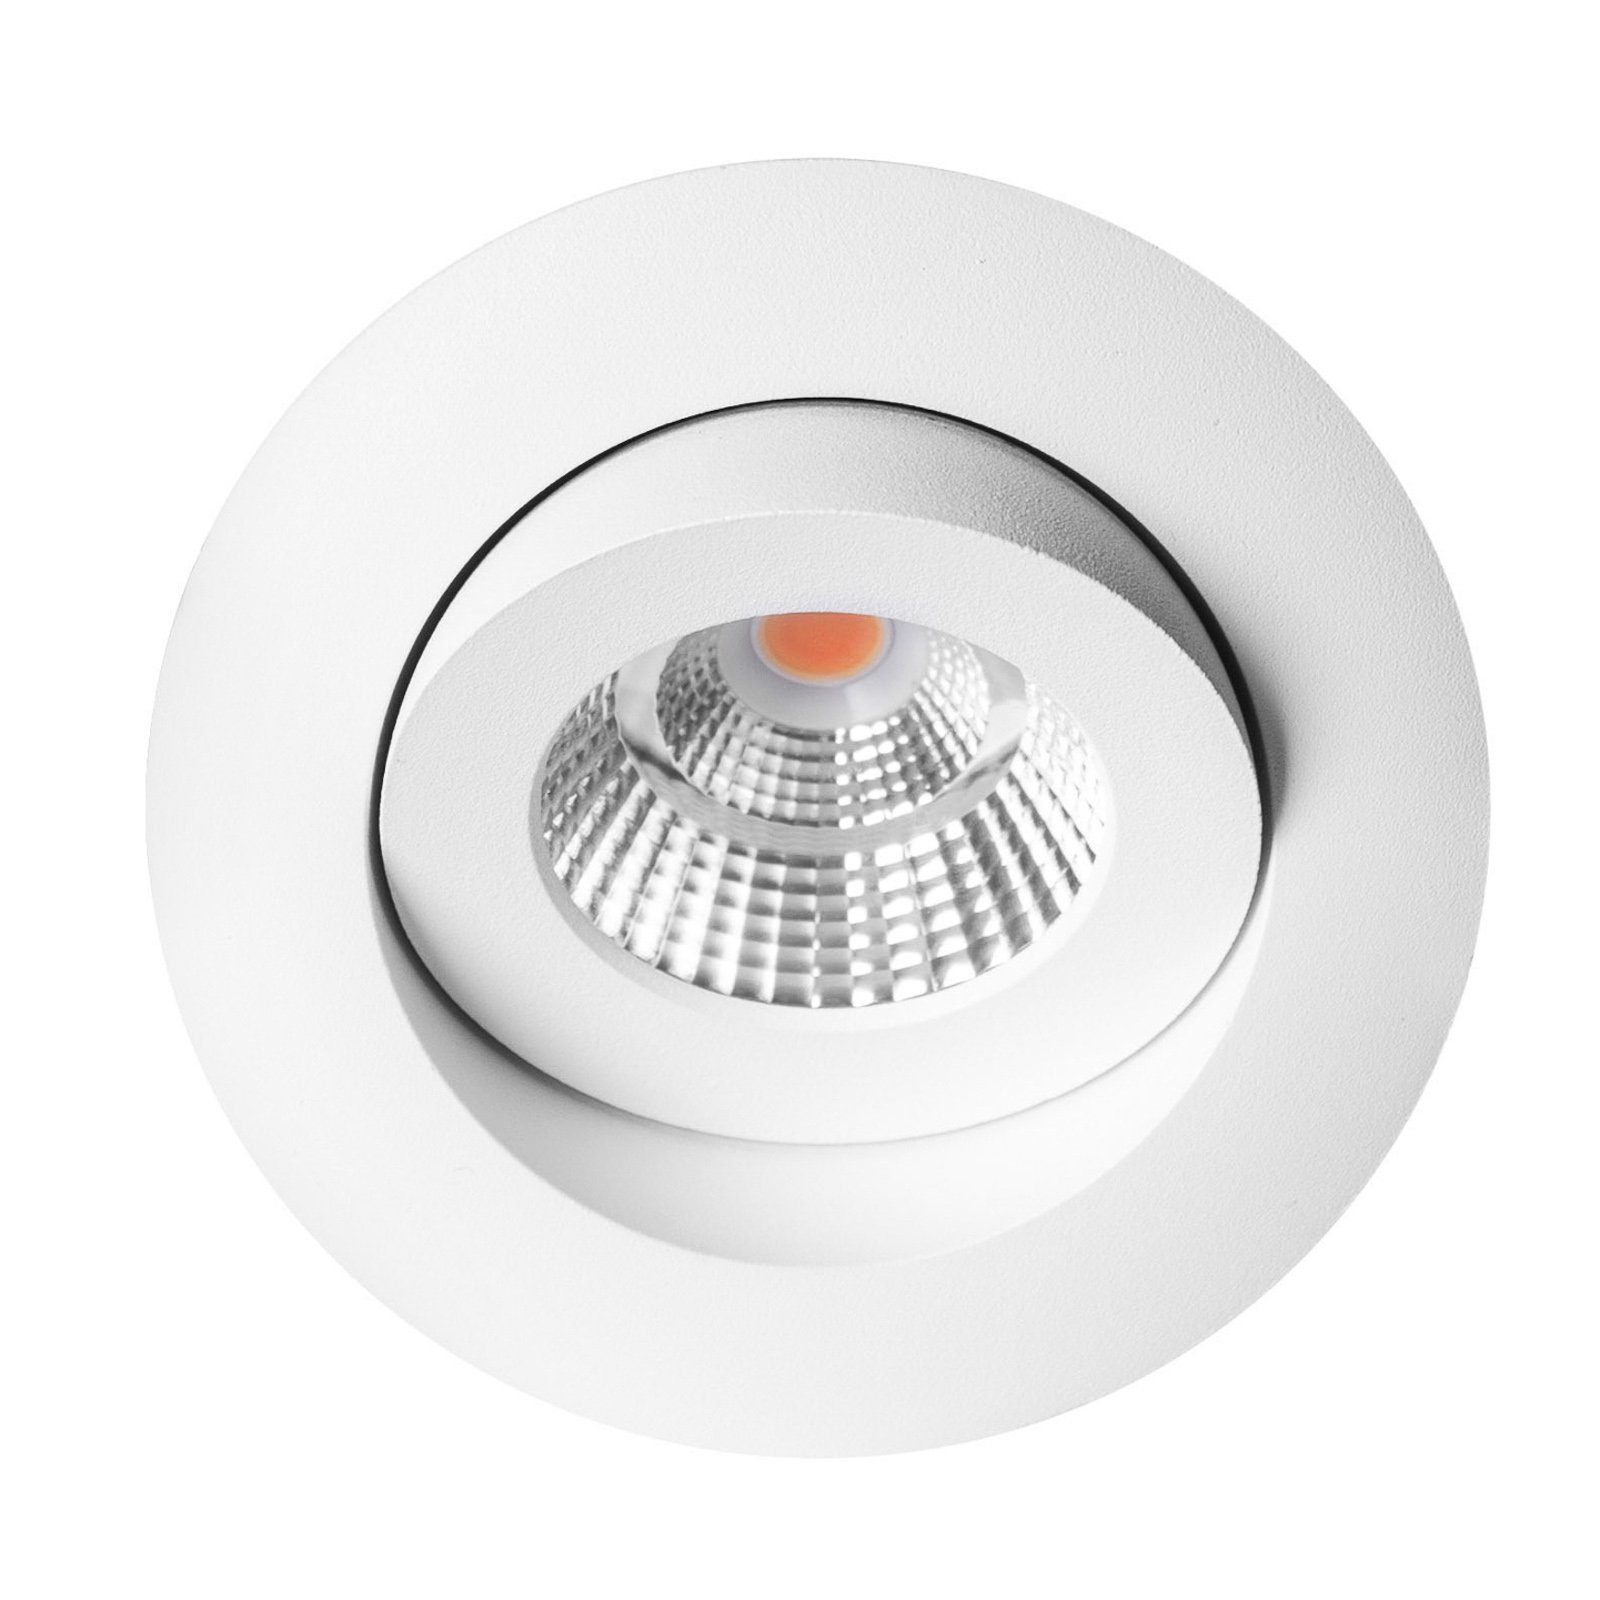 SLC One 360° spot LED incasso dim-to-warm bianco